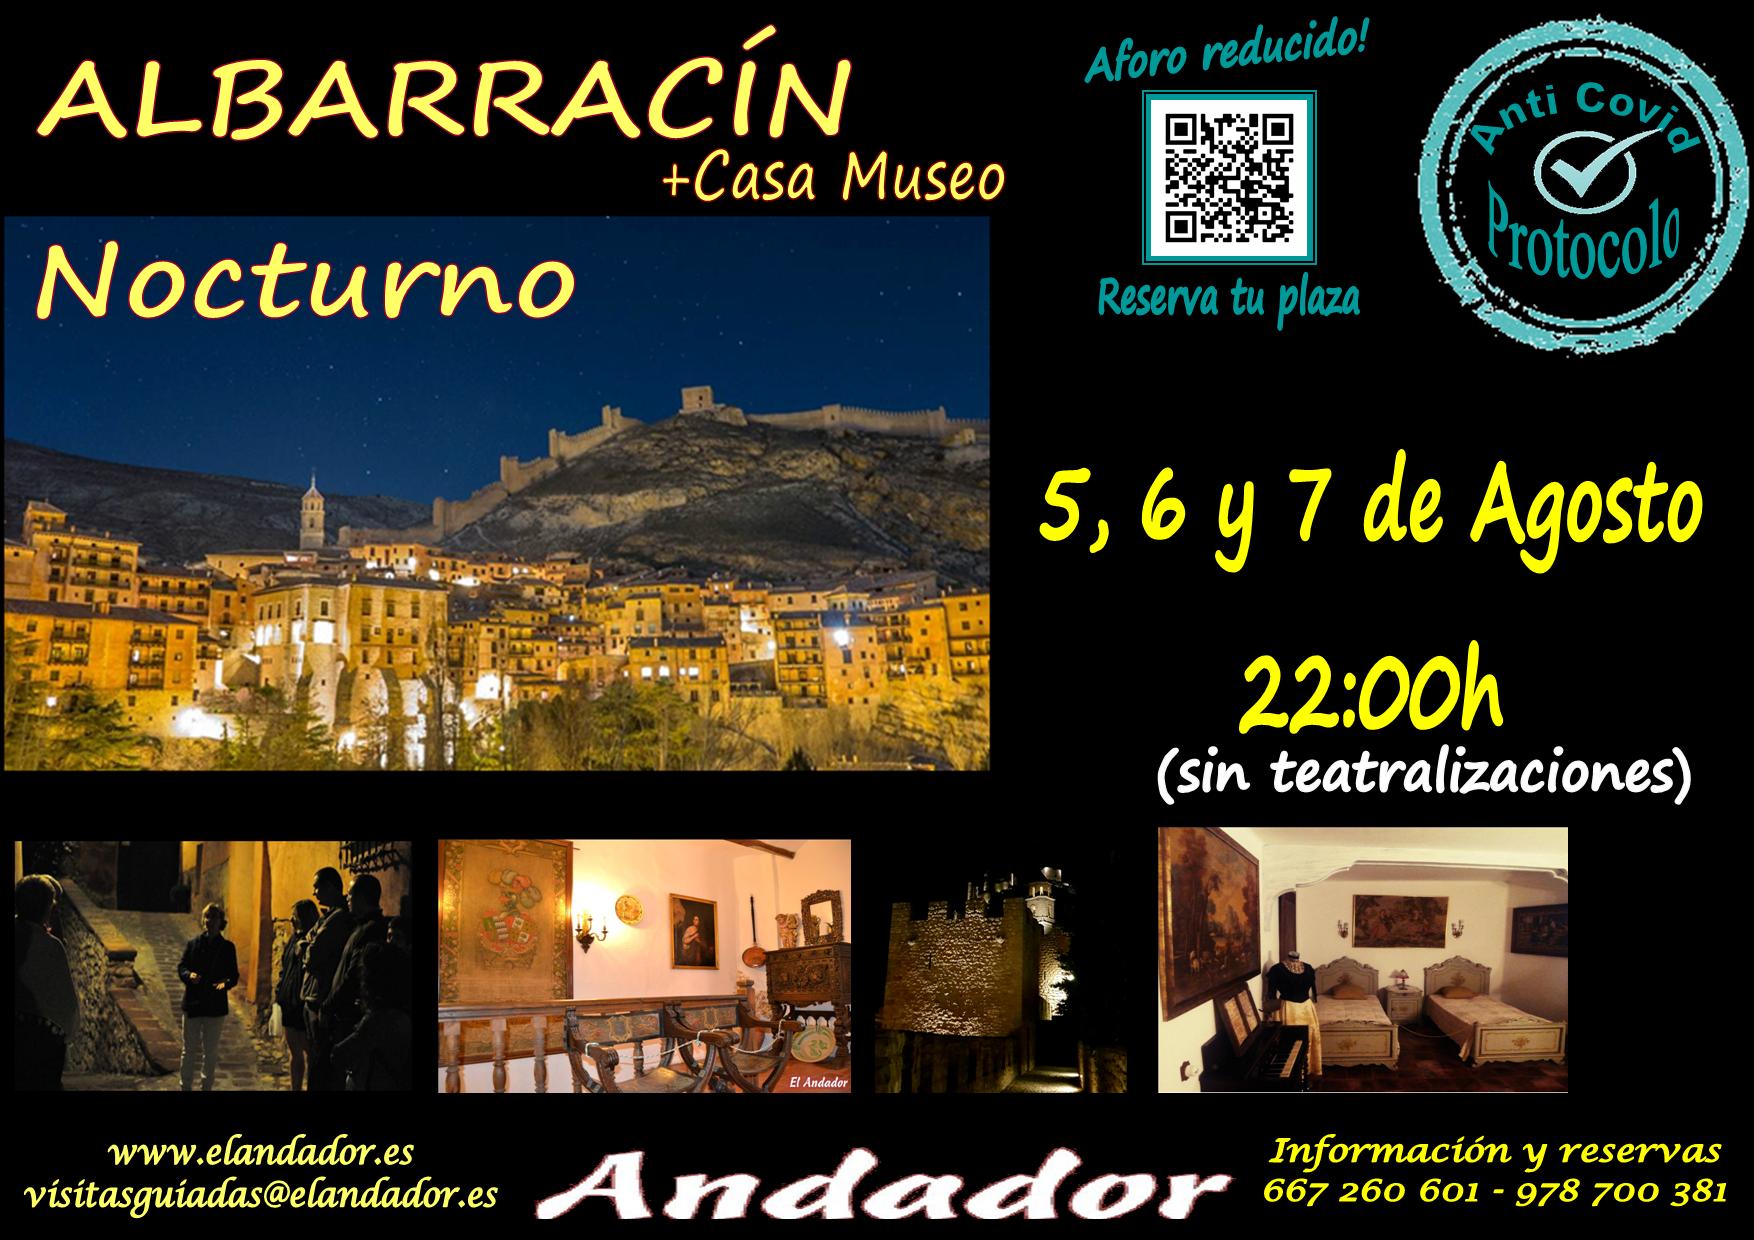 Visita Guiada en Albarracín Nocturno + Casa Museo! Del 5 al 7 de Agosto!